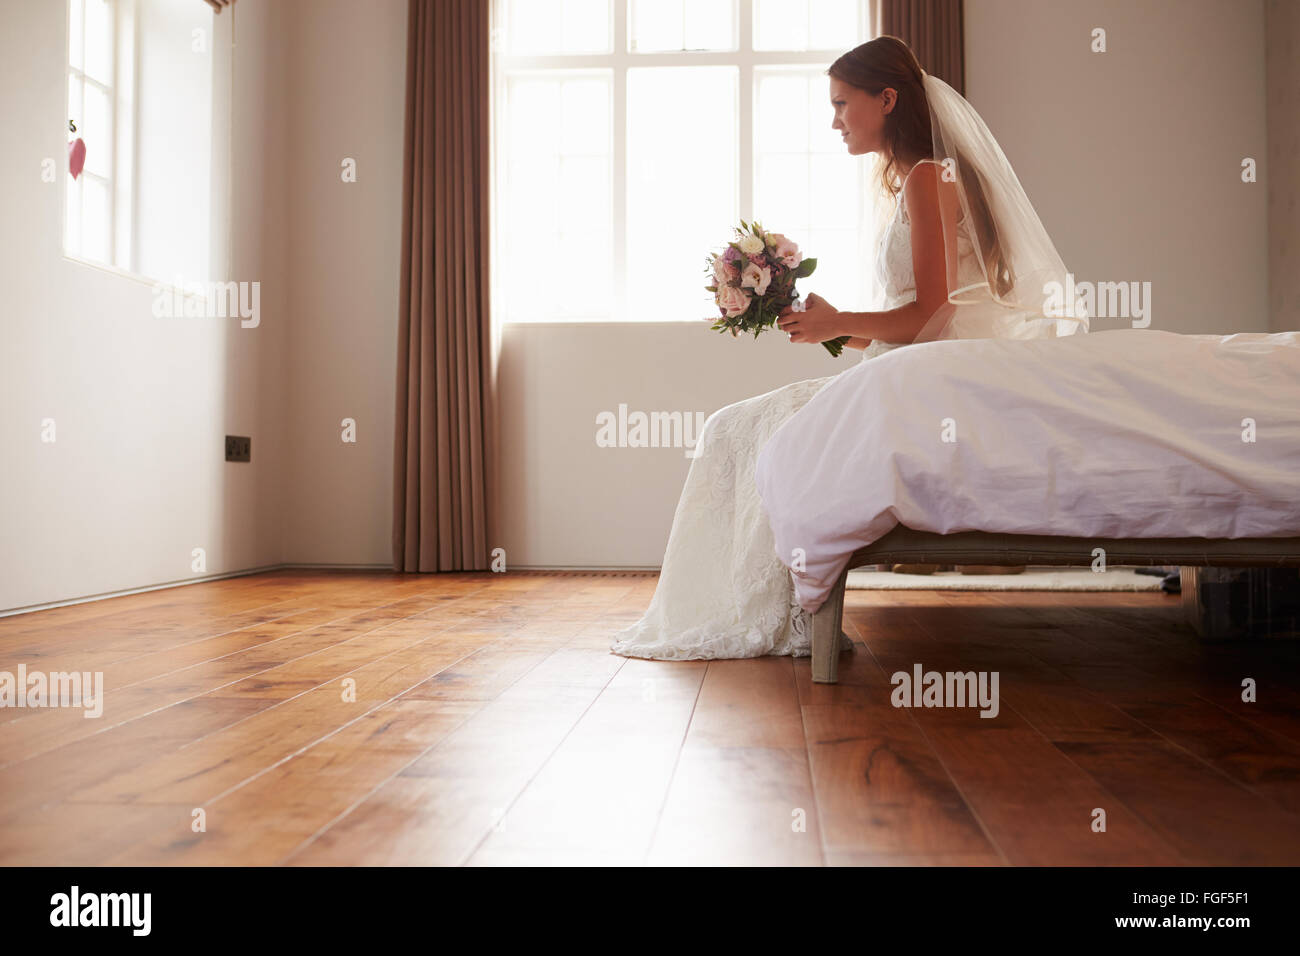 Mariée dans la Chambre avoir des doutes avant le mariage Banque D'Images